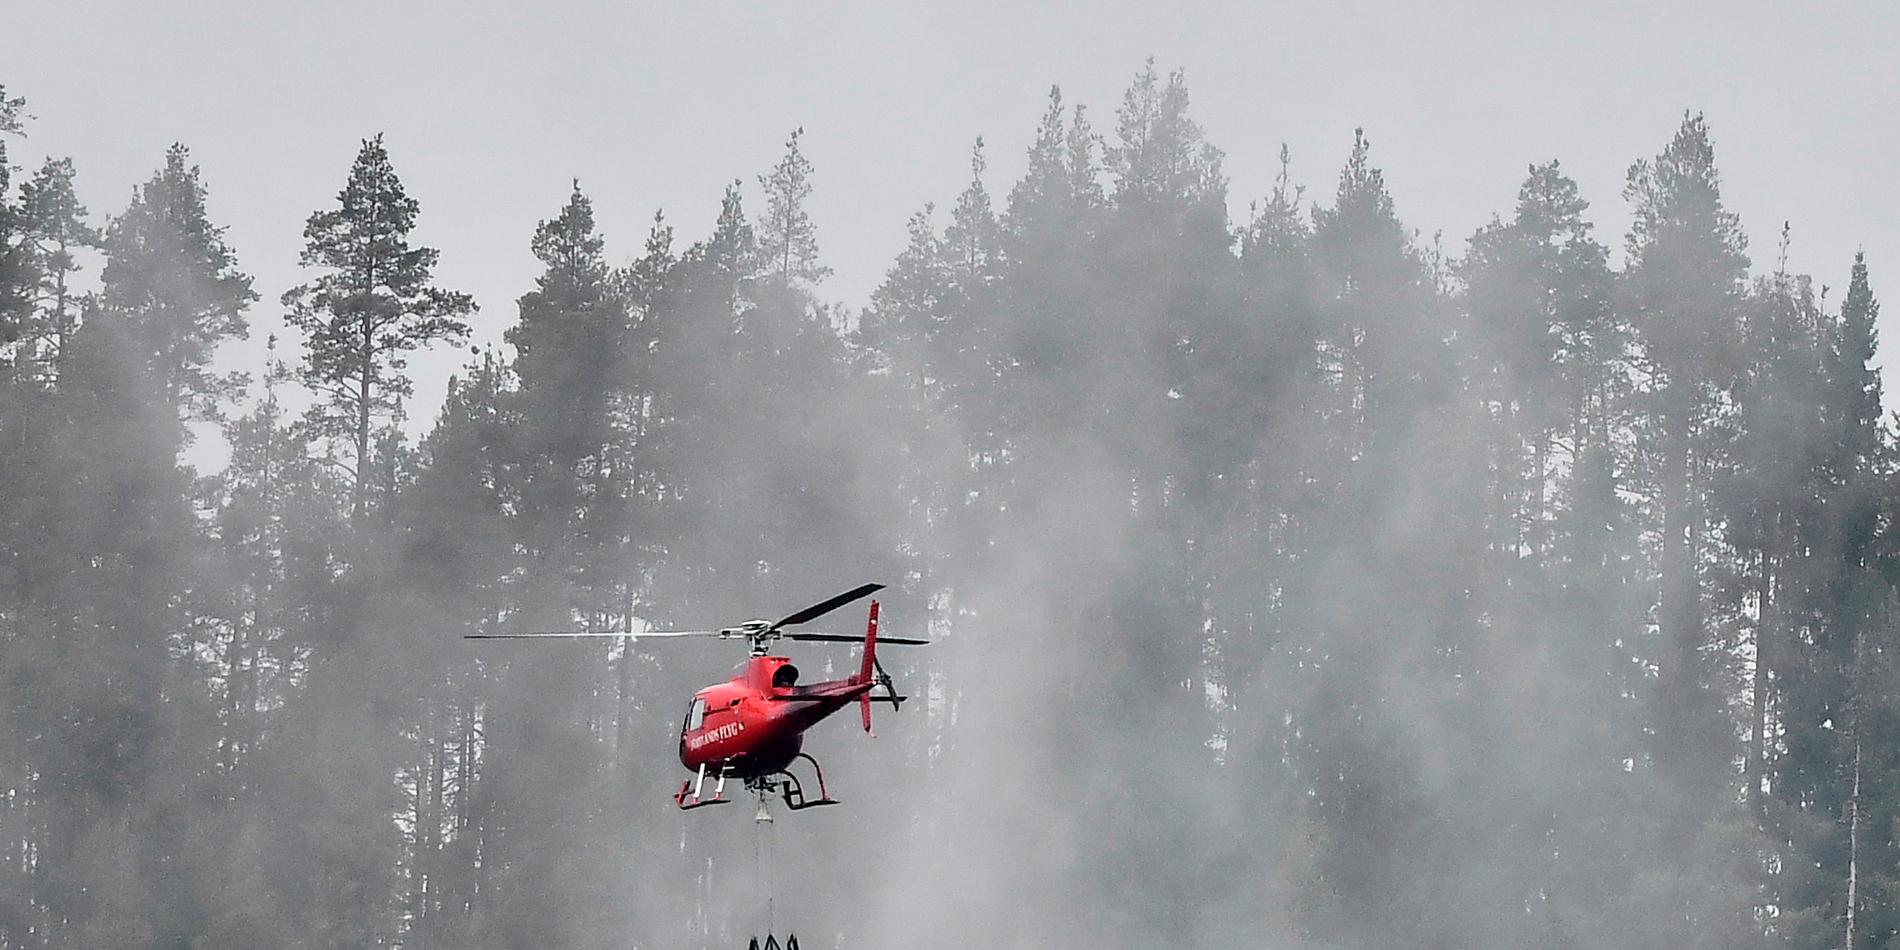 Vid skogsavverkningen revs en kraftledning ner och orsakade en stor skogsbrand nära Hargshamn. 